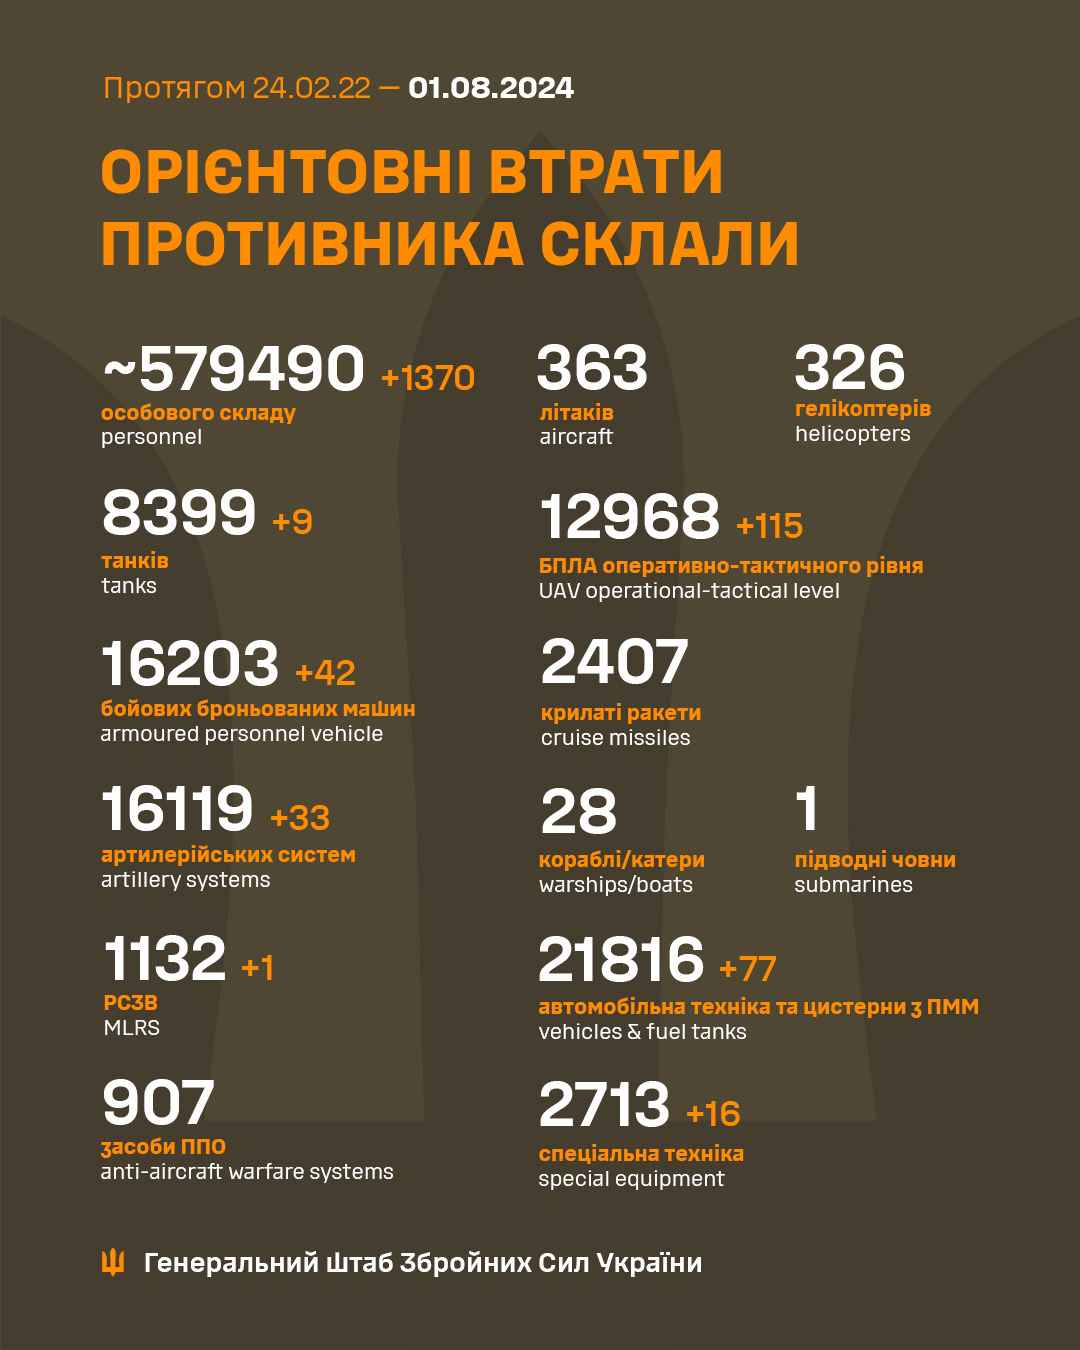 Потери РФ за сутки: 33 артсистемы, 115 беспилотников и 1370 оккупантов